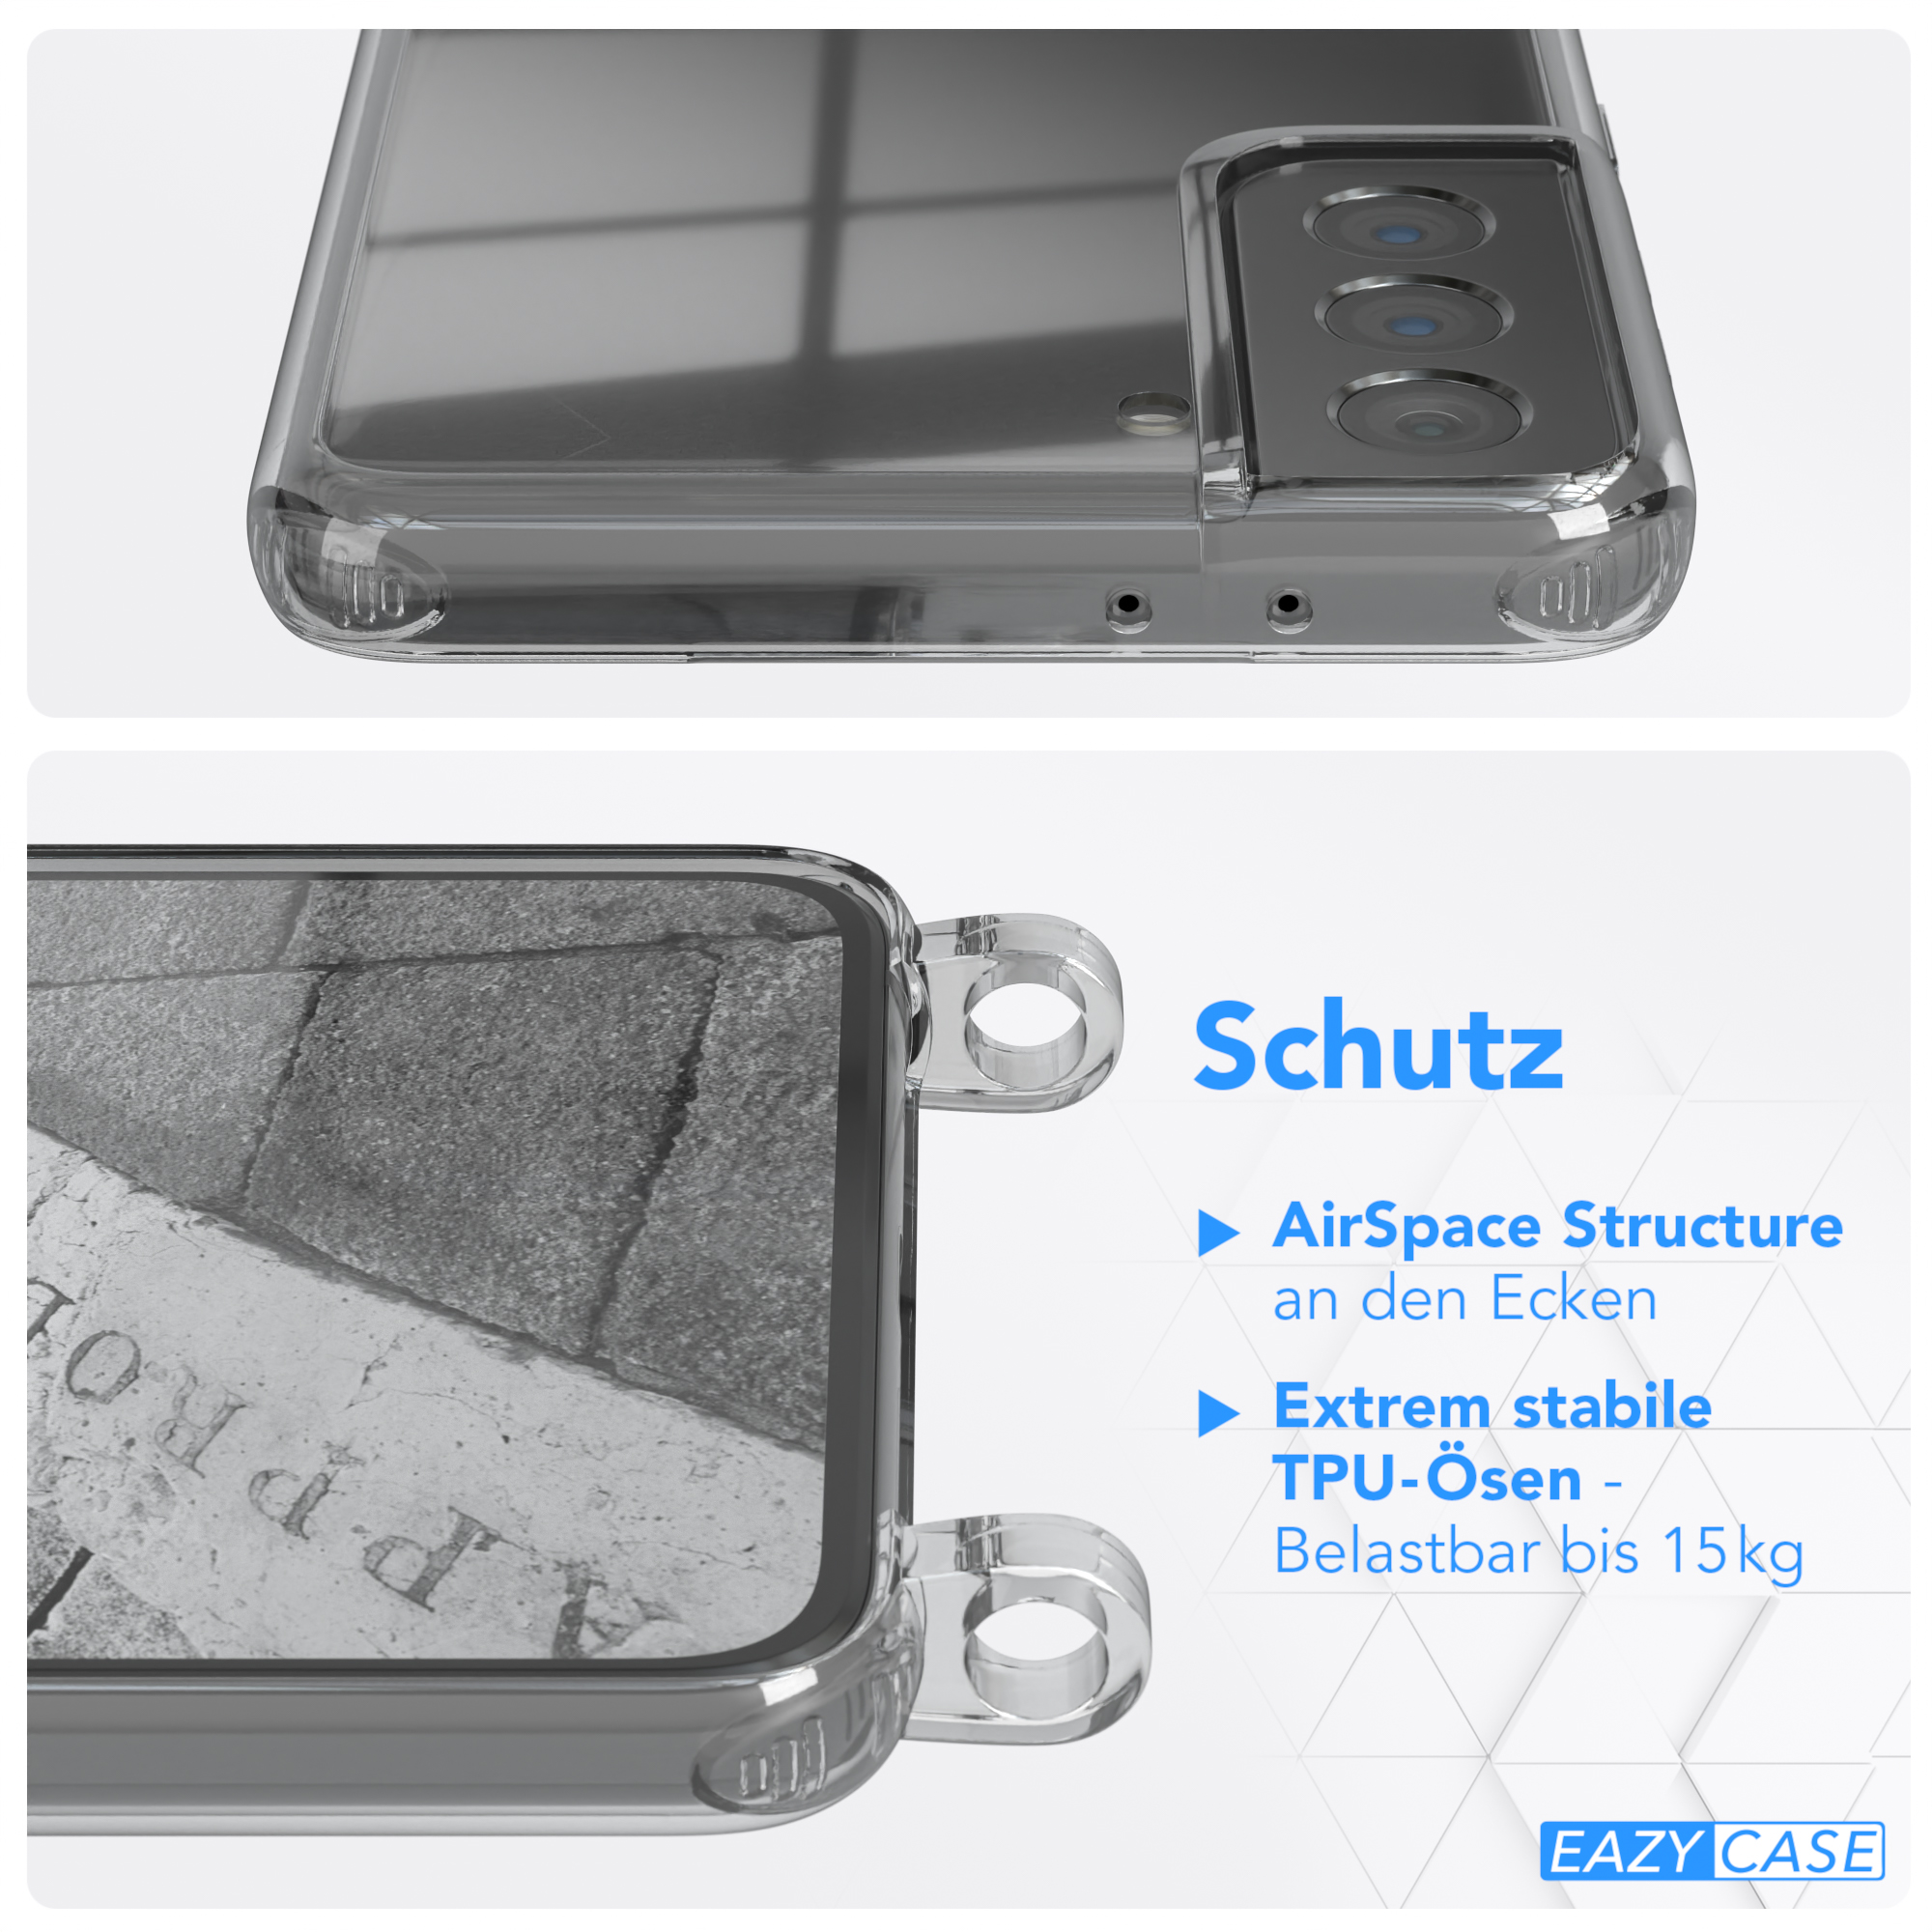 S21 Plus mit EAZY Umhängetasche, 5G, Anthrazit Umhängeband, Galaxy Clear Cover Samsung, CASE